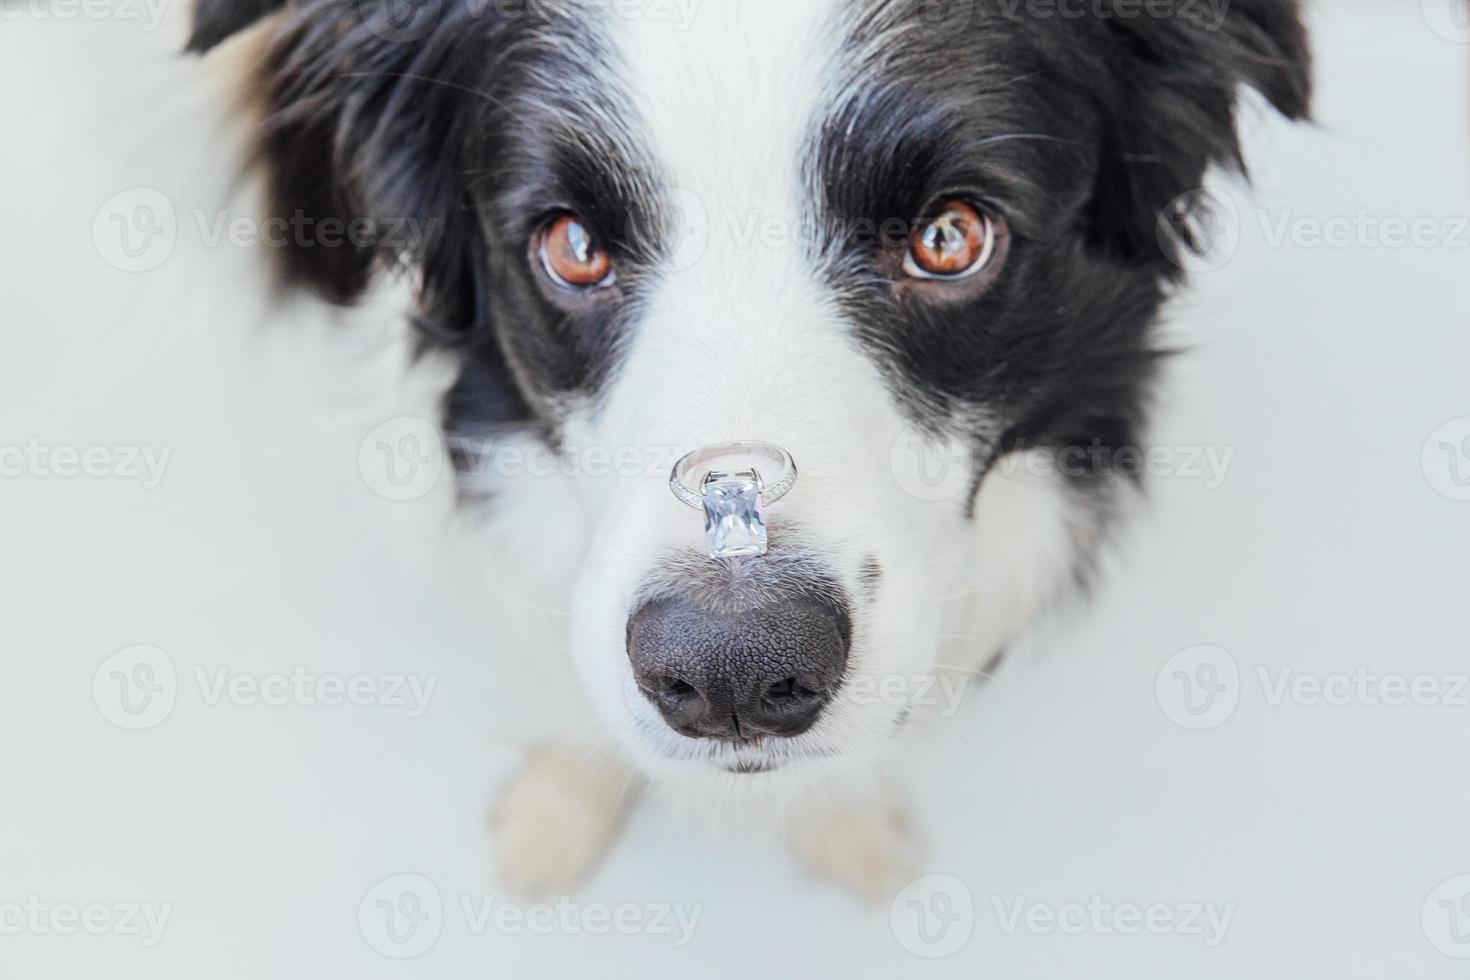 Te casarías conmigo. divertido retrato de lindo cachorro border collie sosteniendo anillo de bodas en la nariz aislado sobre fondo blanco. compromiso, matrimonio, concepto de propuesta foto